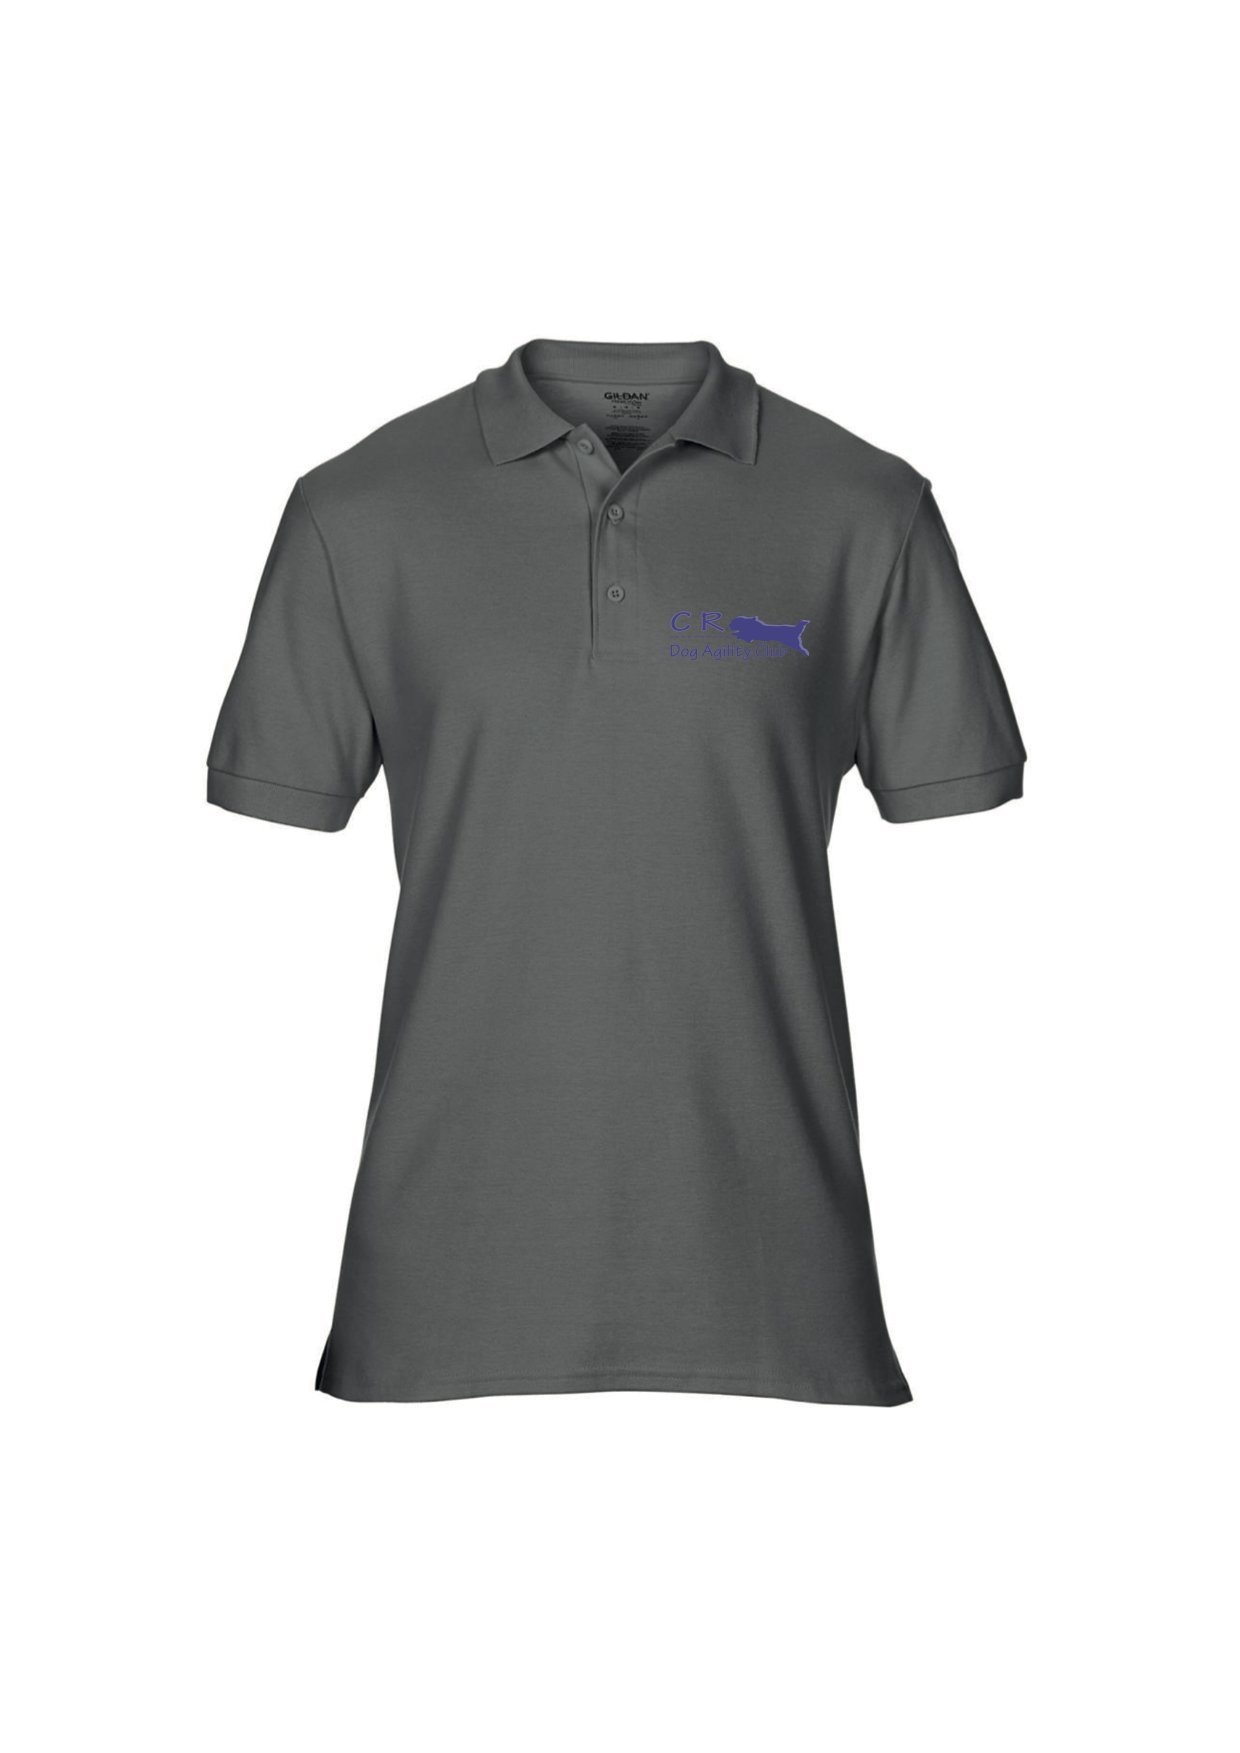 CR Agility Polo shirt Small – Pooch